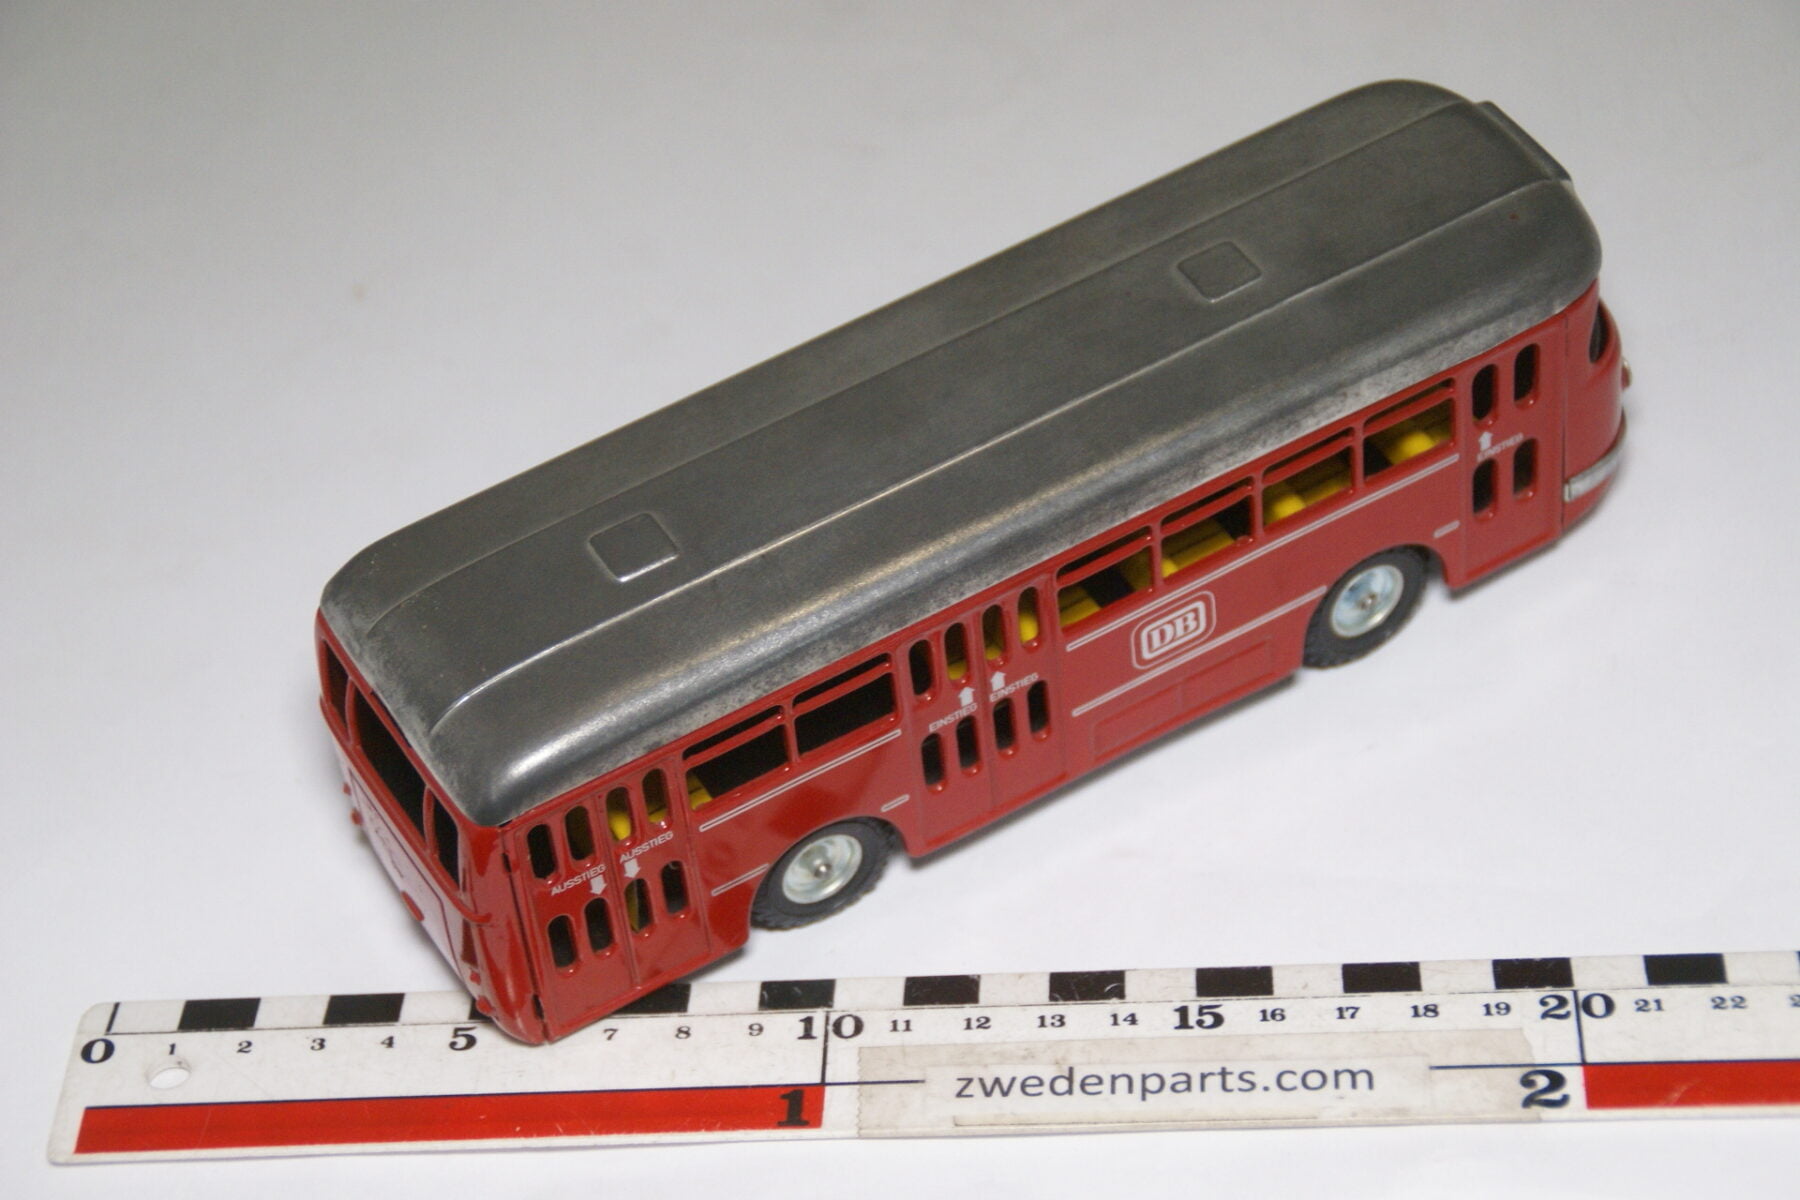 DSC07993 miniatuur CKO blikken bus rood grijs nr 411 nieuwstaat-acca7a98